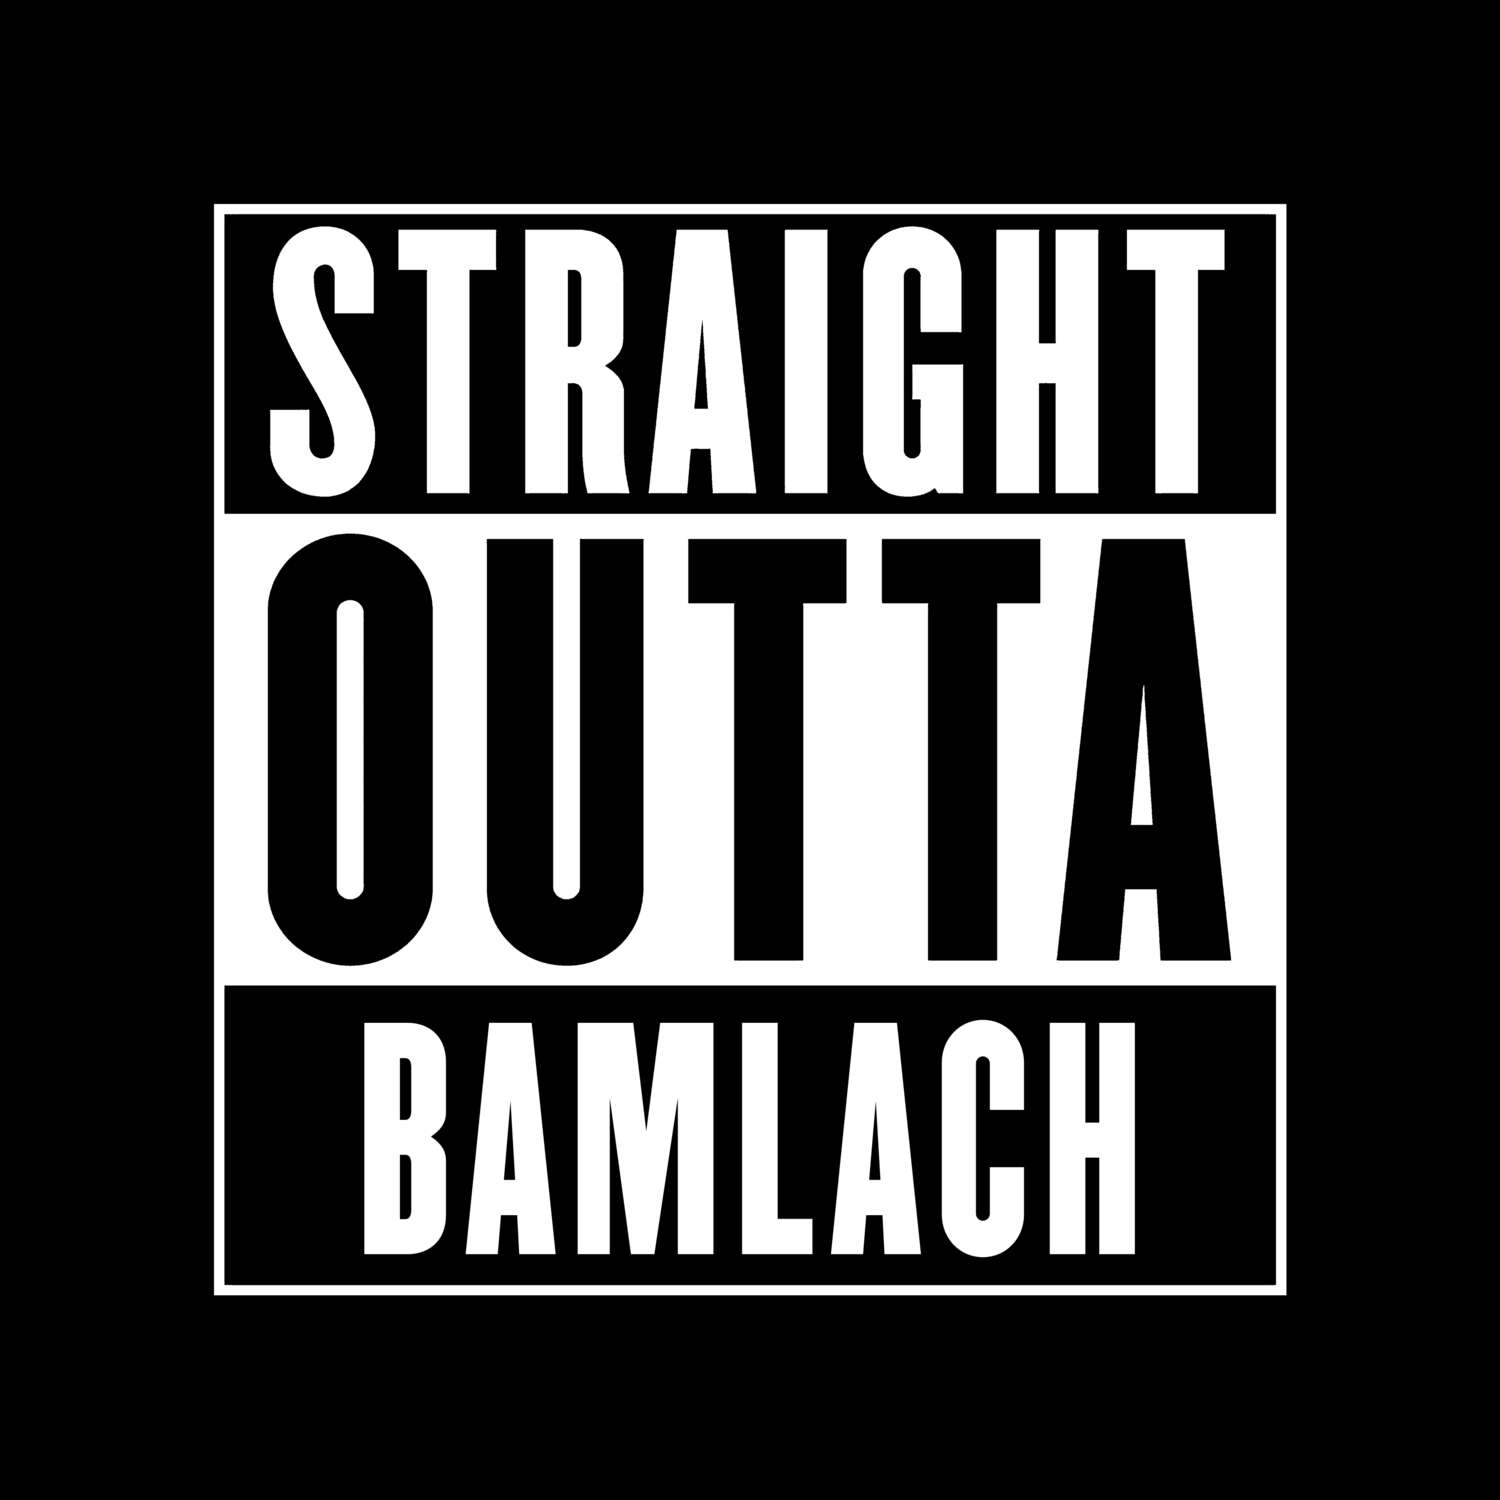 Bamlach T-Shirt »Straight Outta«